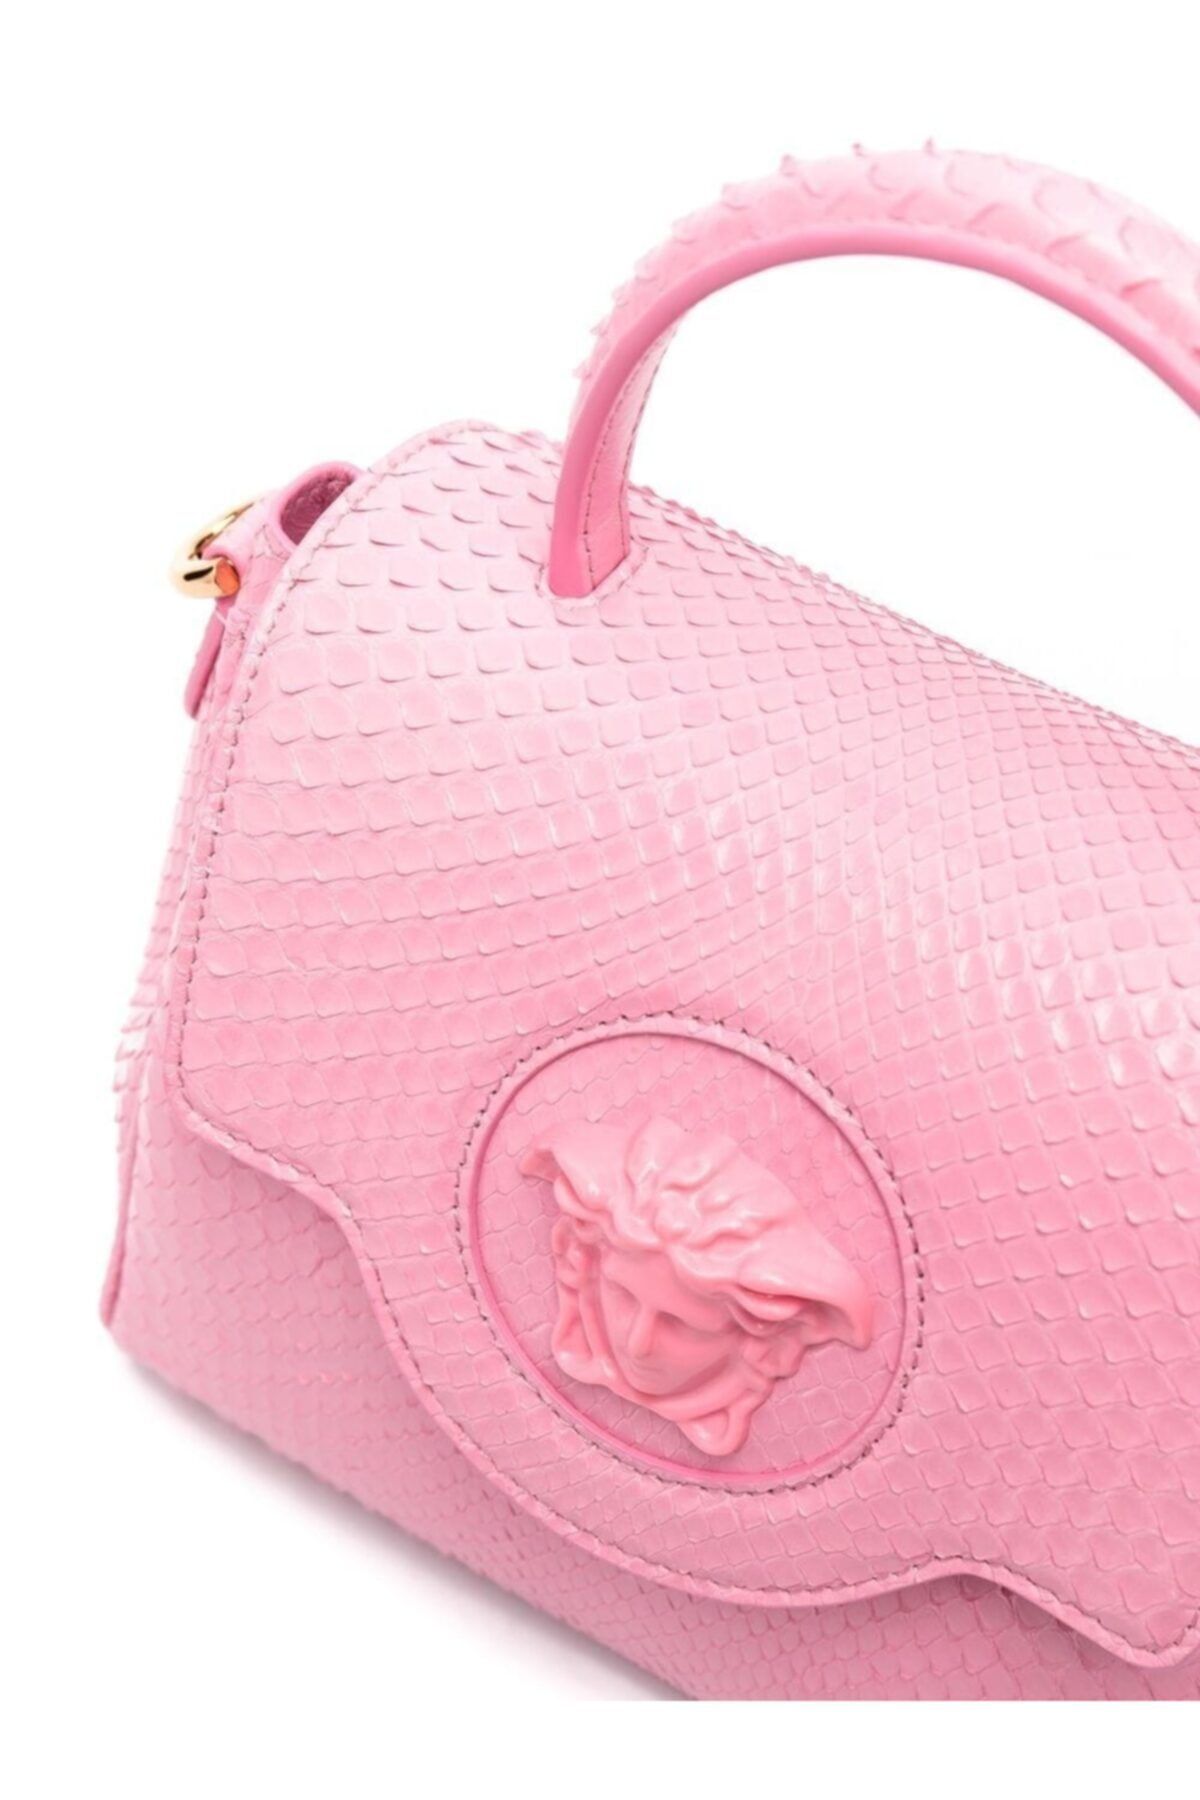 Versace Pink Leather La Medusa Modular Pouch Bag Versace | TLC